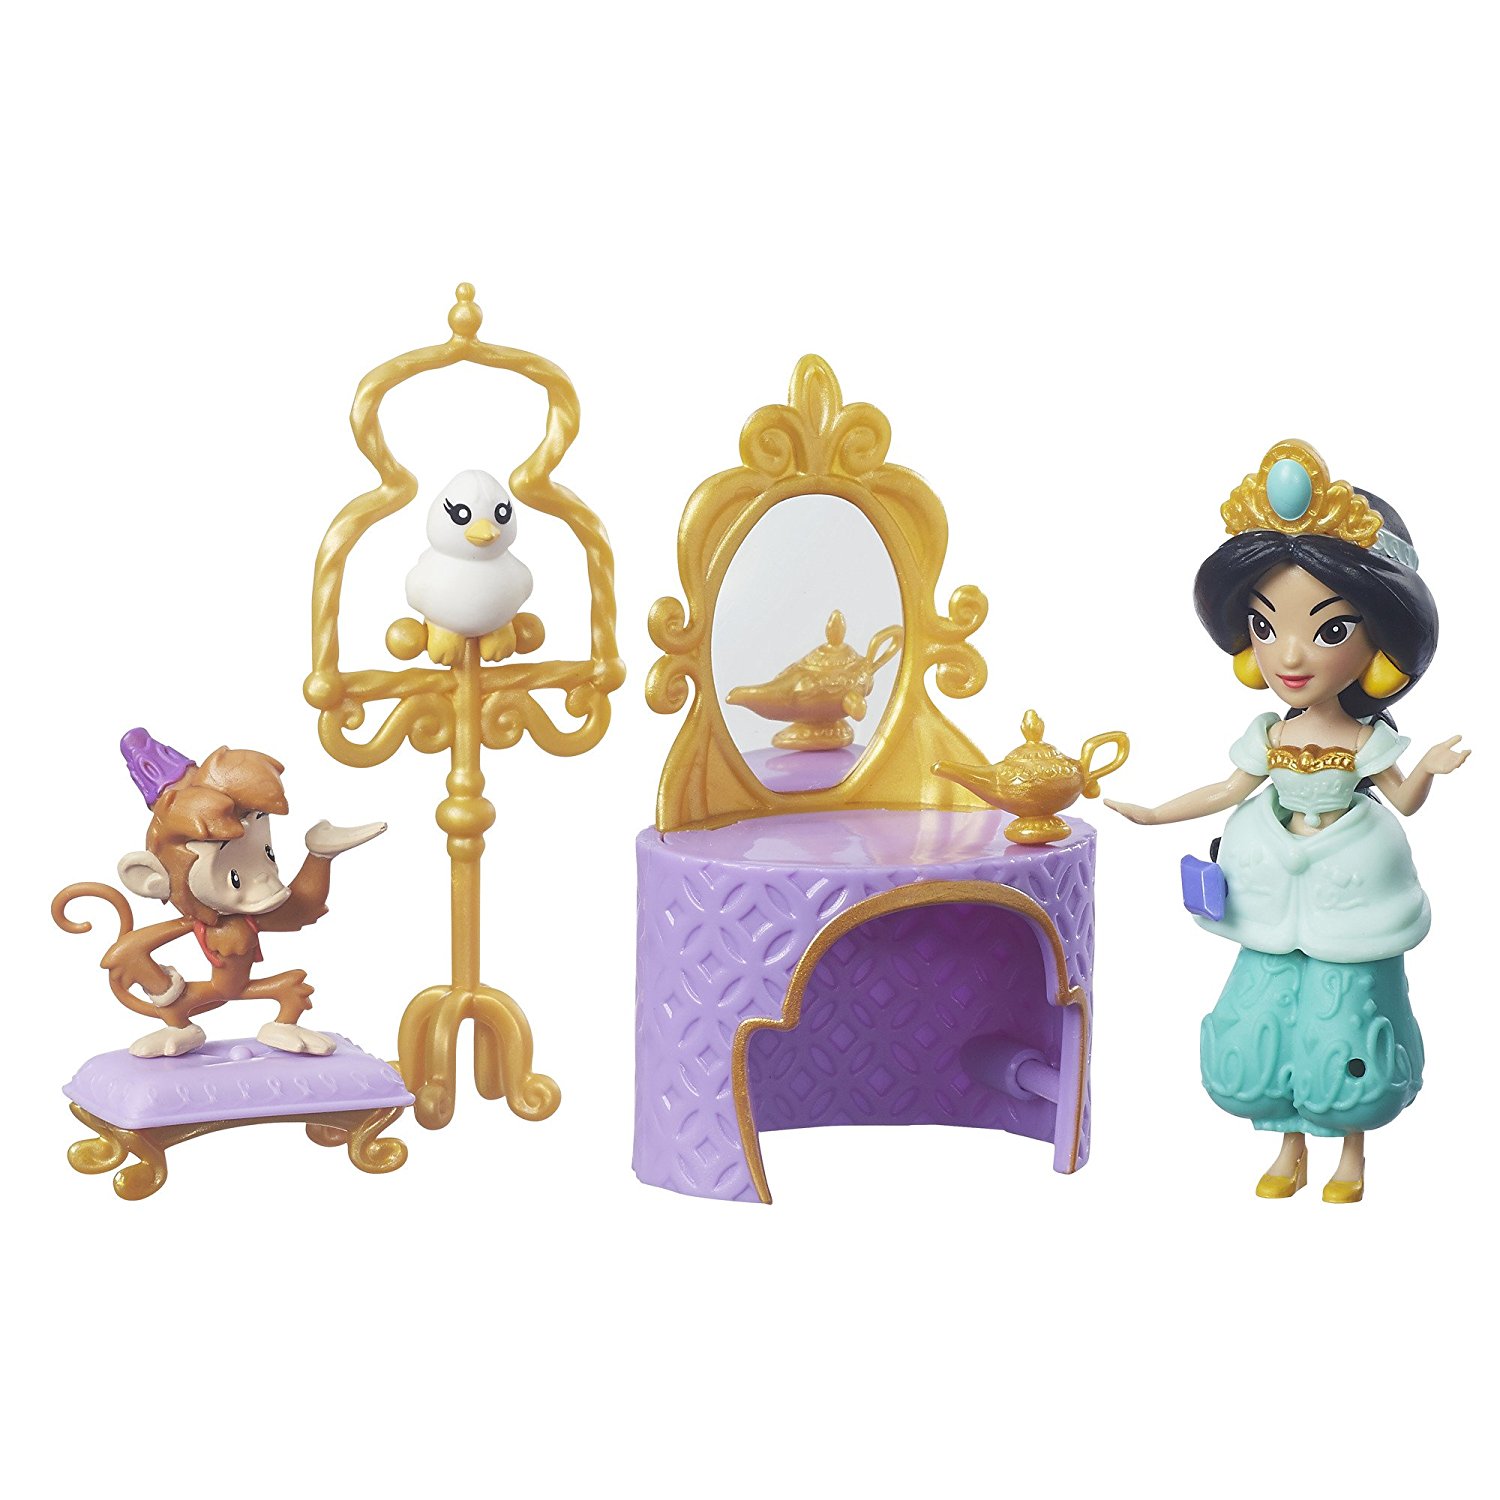 Купить принцесс дисней. Куклы Хасбро принцессы Дисней. Дисней принцессы мини куклы Хасбро. Набор Hasbro Disney Princess маленькое королевство принцесса.